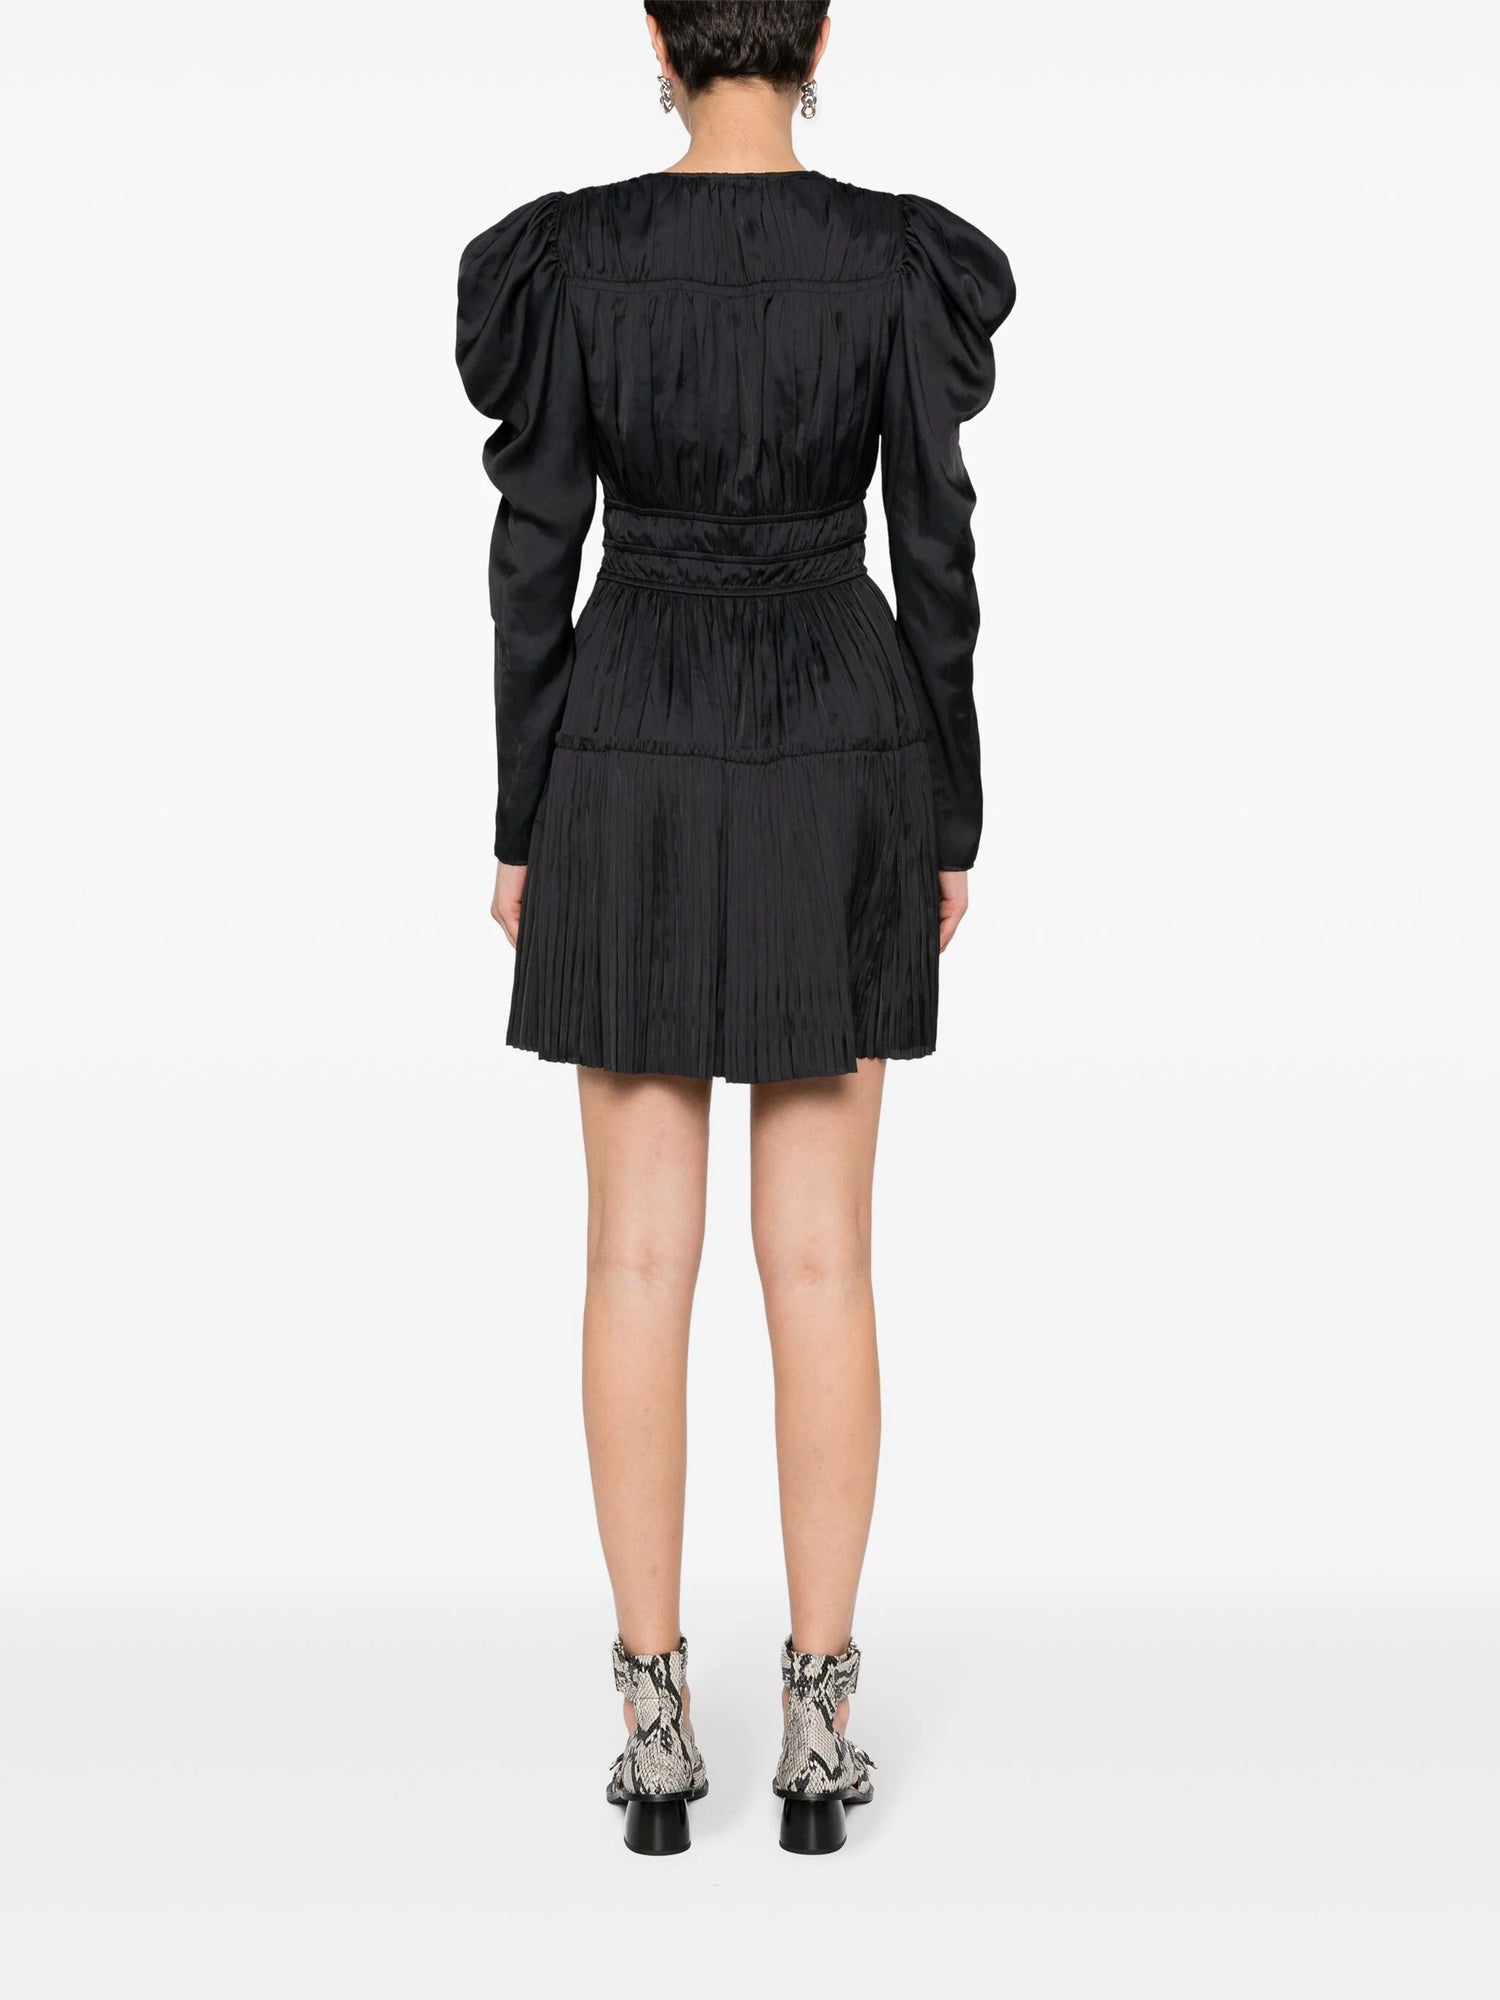 Lu Mini Dress, black